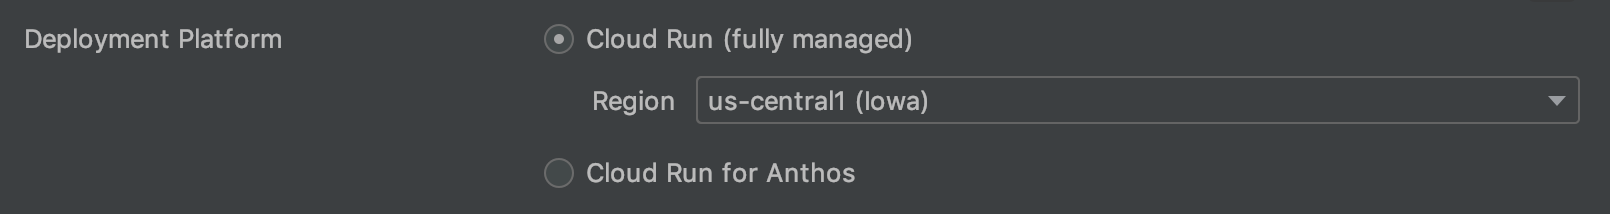 Concernant la plate-forme de déploiement, l'option "Fully managed" (entièrement géré) a été sélectionnée (et une région a été spécifiée), l'autre option étant "Anthos on GKE" (Anthos sur GKE)